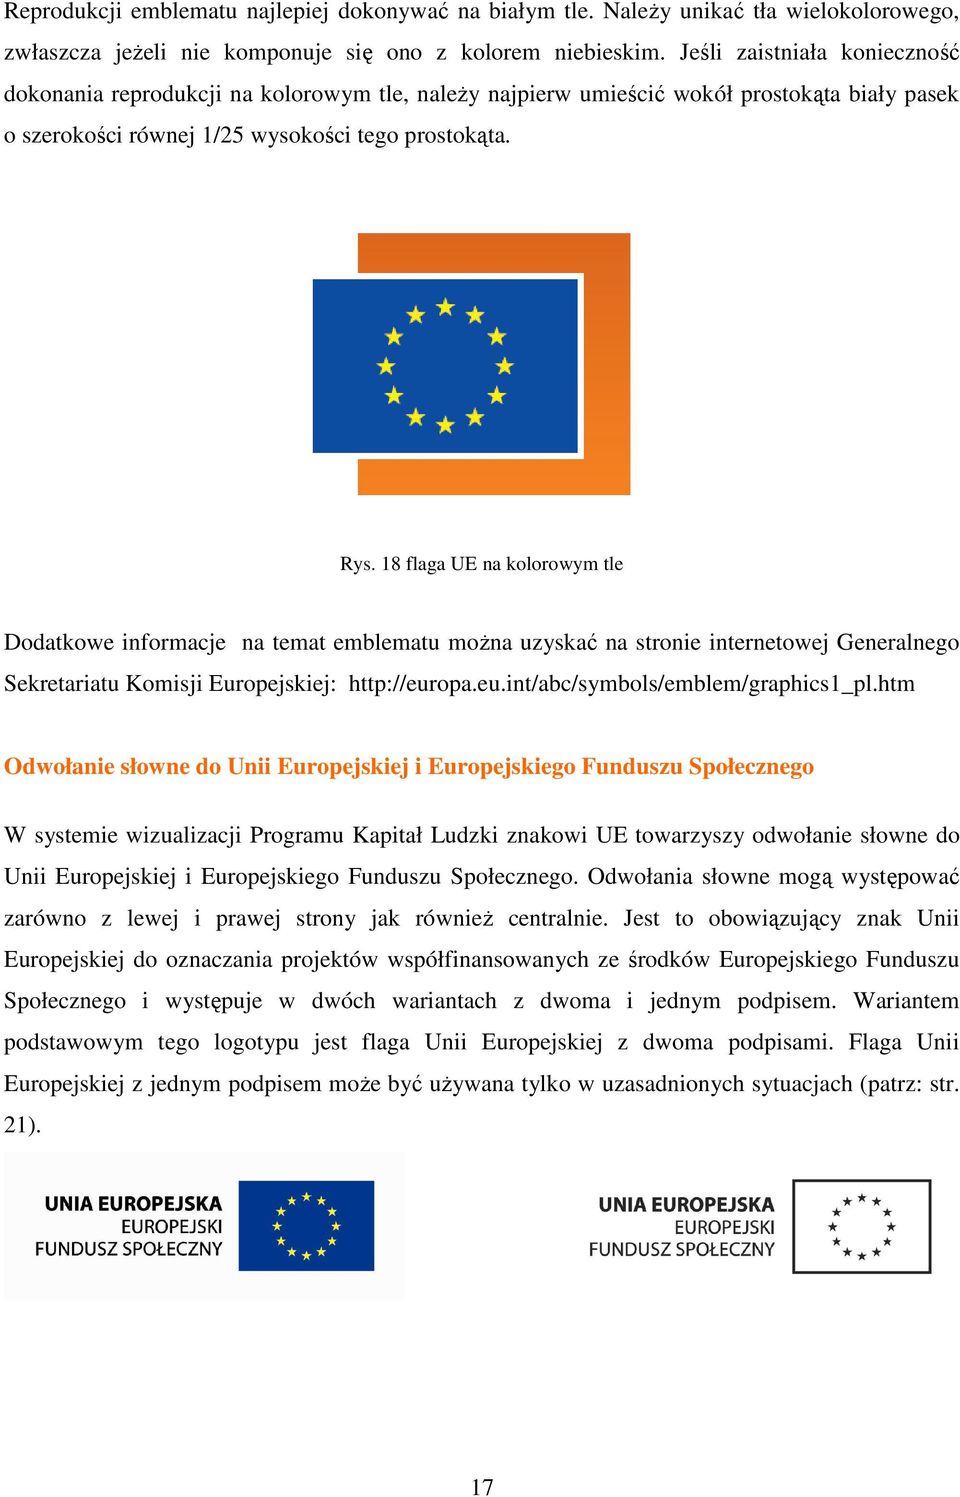 18 flaga UE na kolorowym tle Dodatkowe informacje na temat emblematu moŝna uzyskać na stronie internetowej Generalnego Sekretariatu Komisji Europejskiej: http://europa.eu.int/abc/symbols/emblem/graphics1_pl.